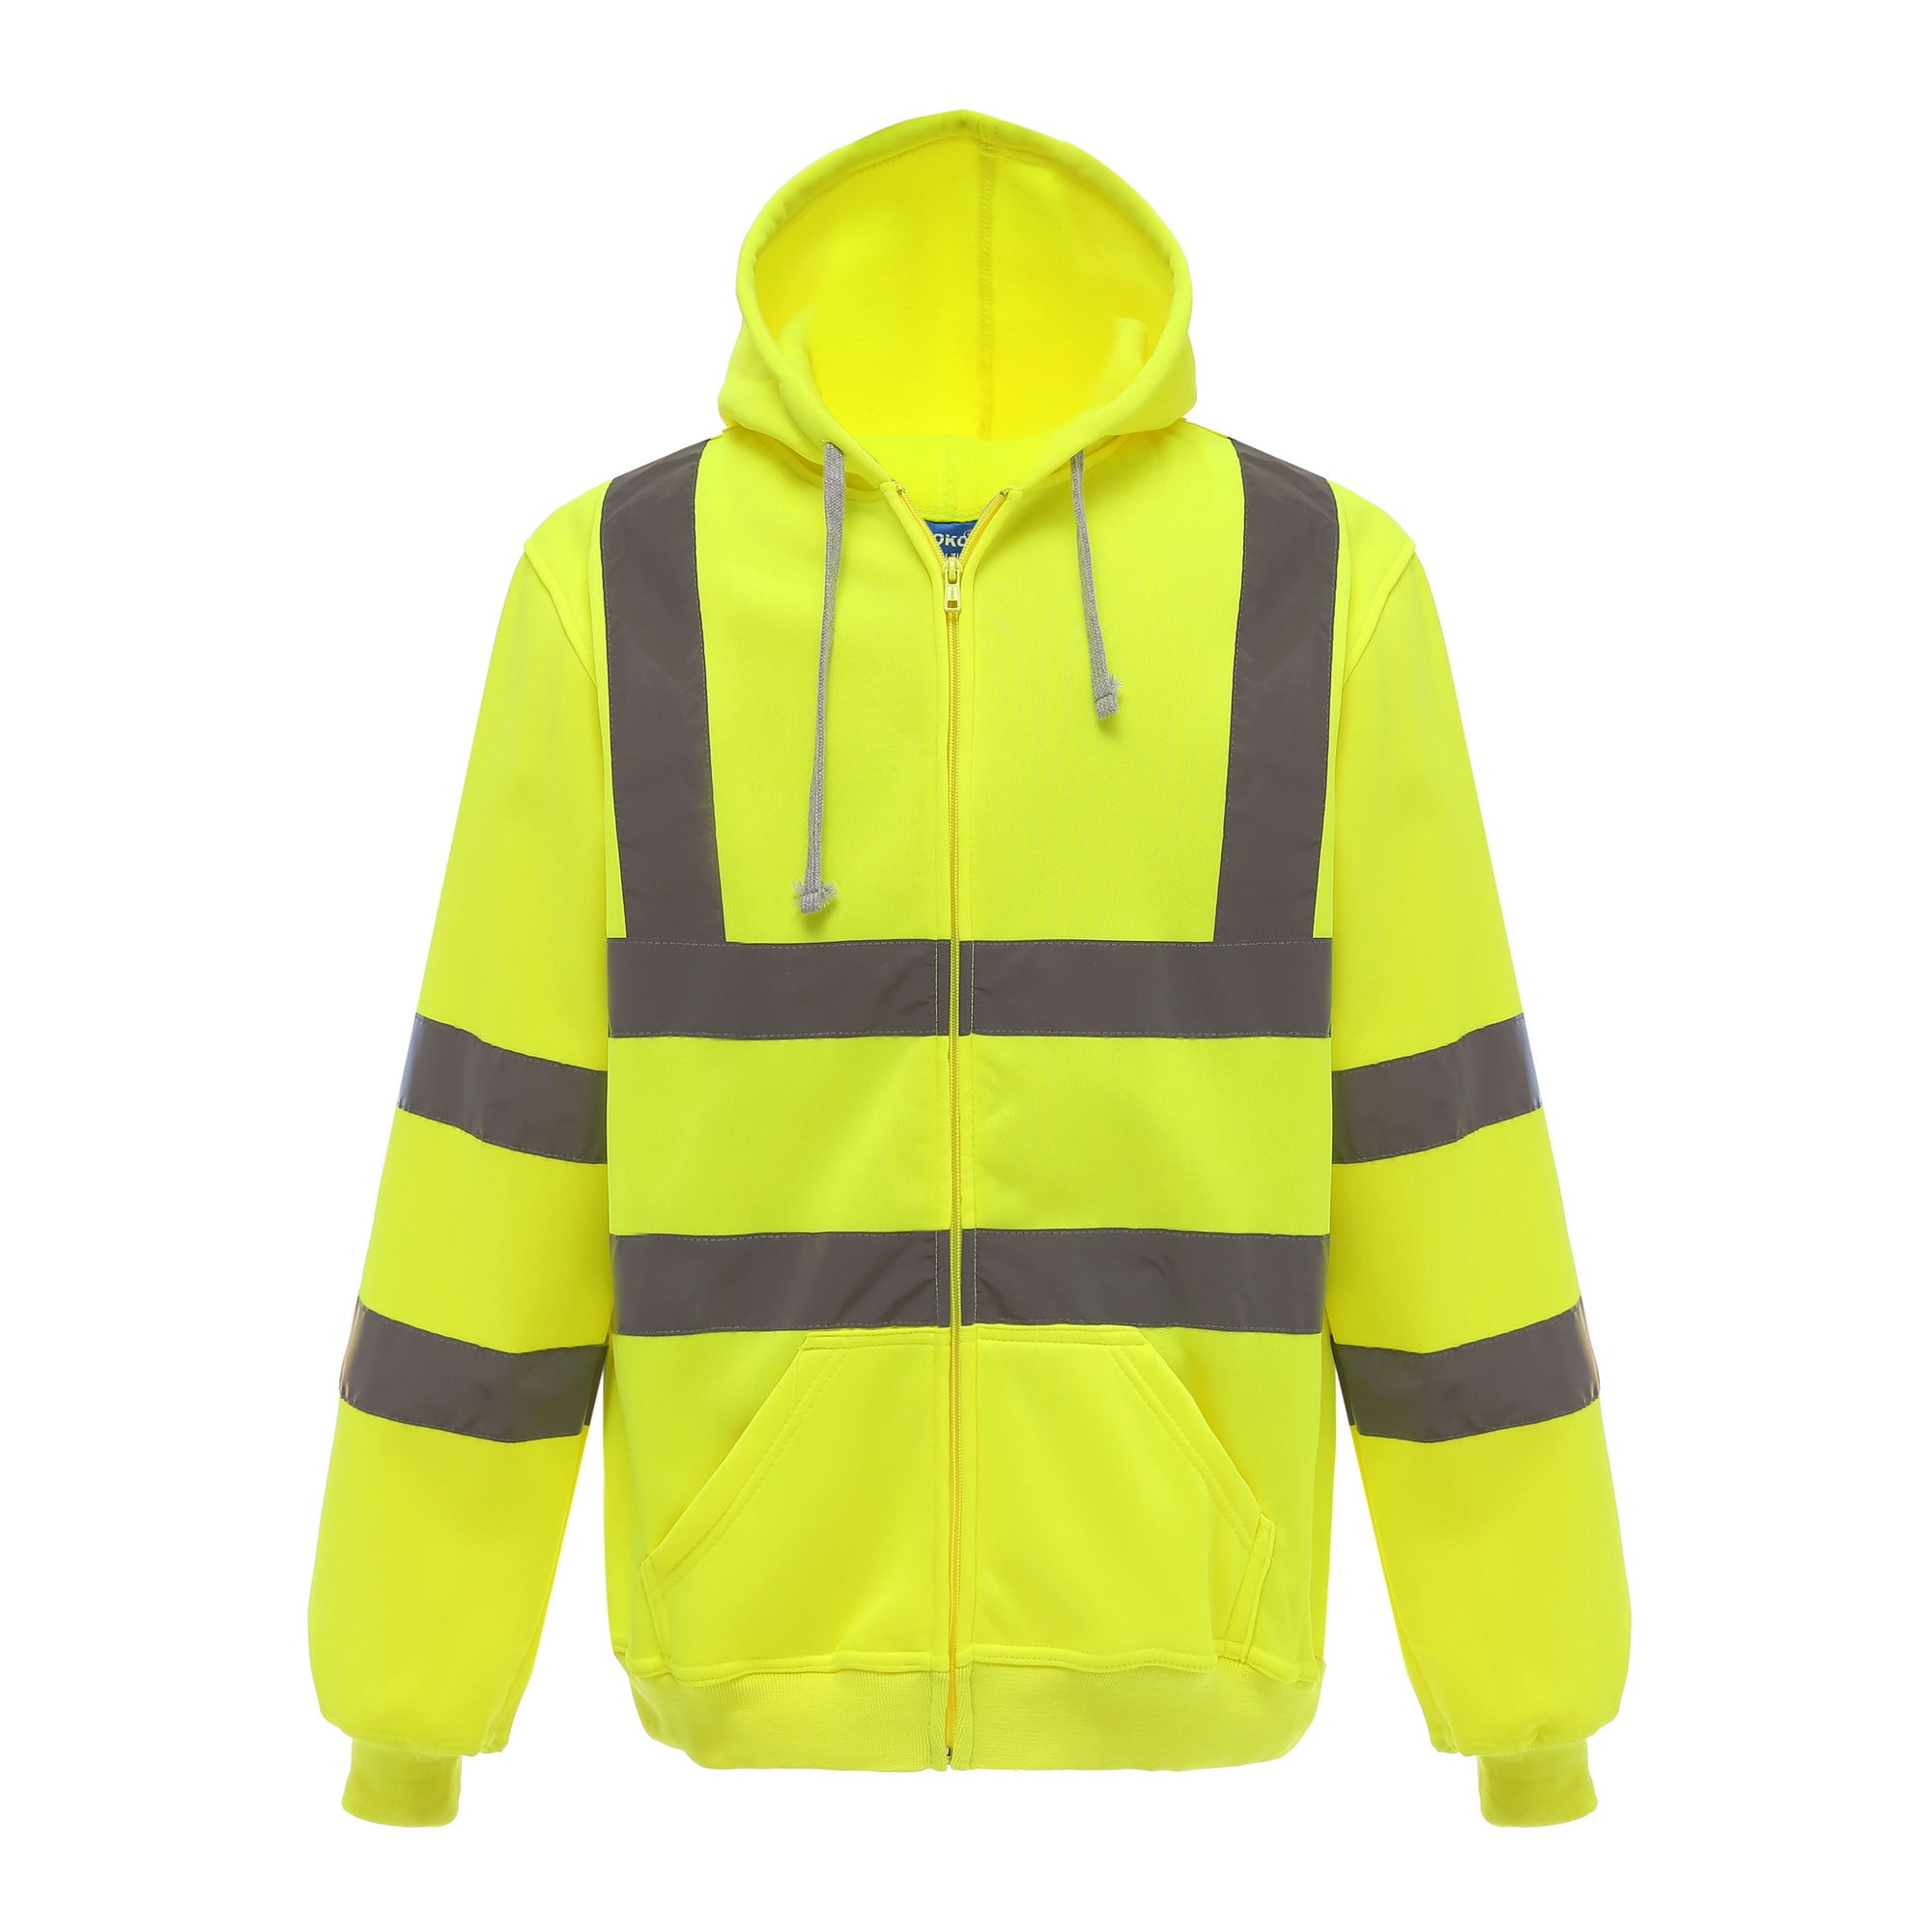 Yoko - Sudadera con capucha y cremallera completa reflectante para trabajar  para hombre (Amarillo) Yoko UTRW5256_yellow